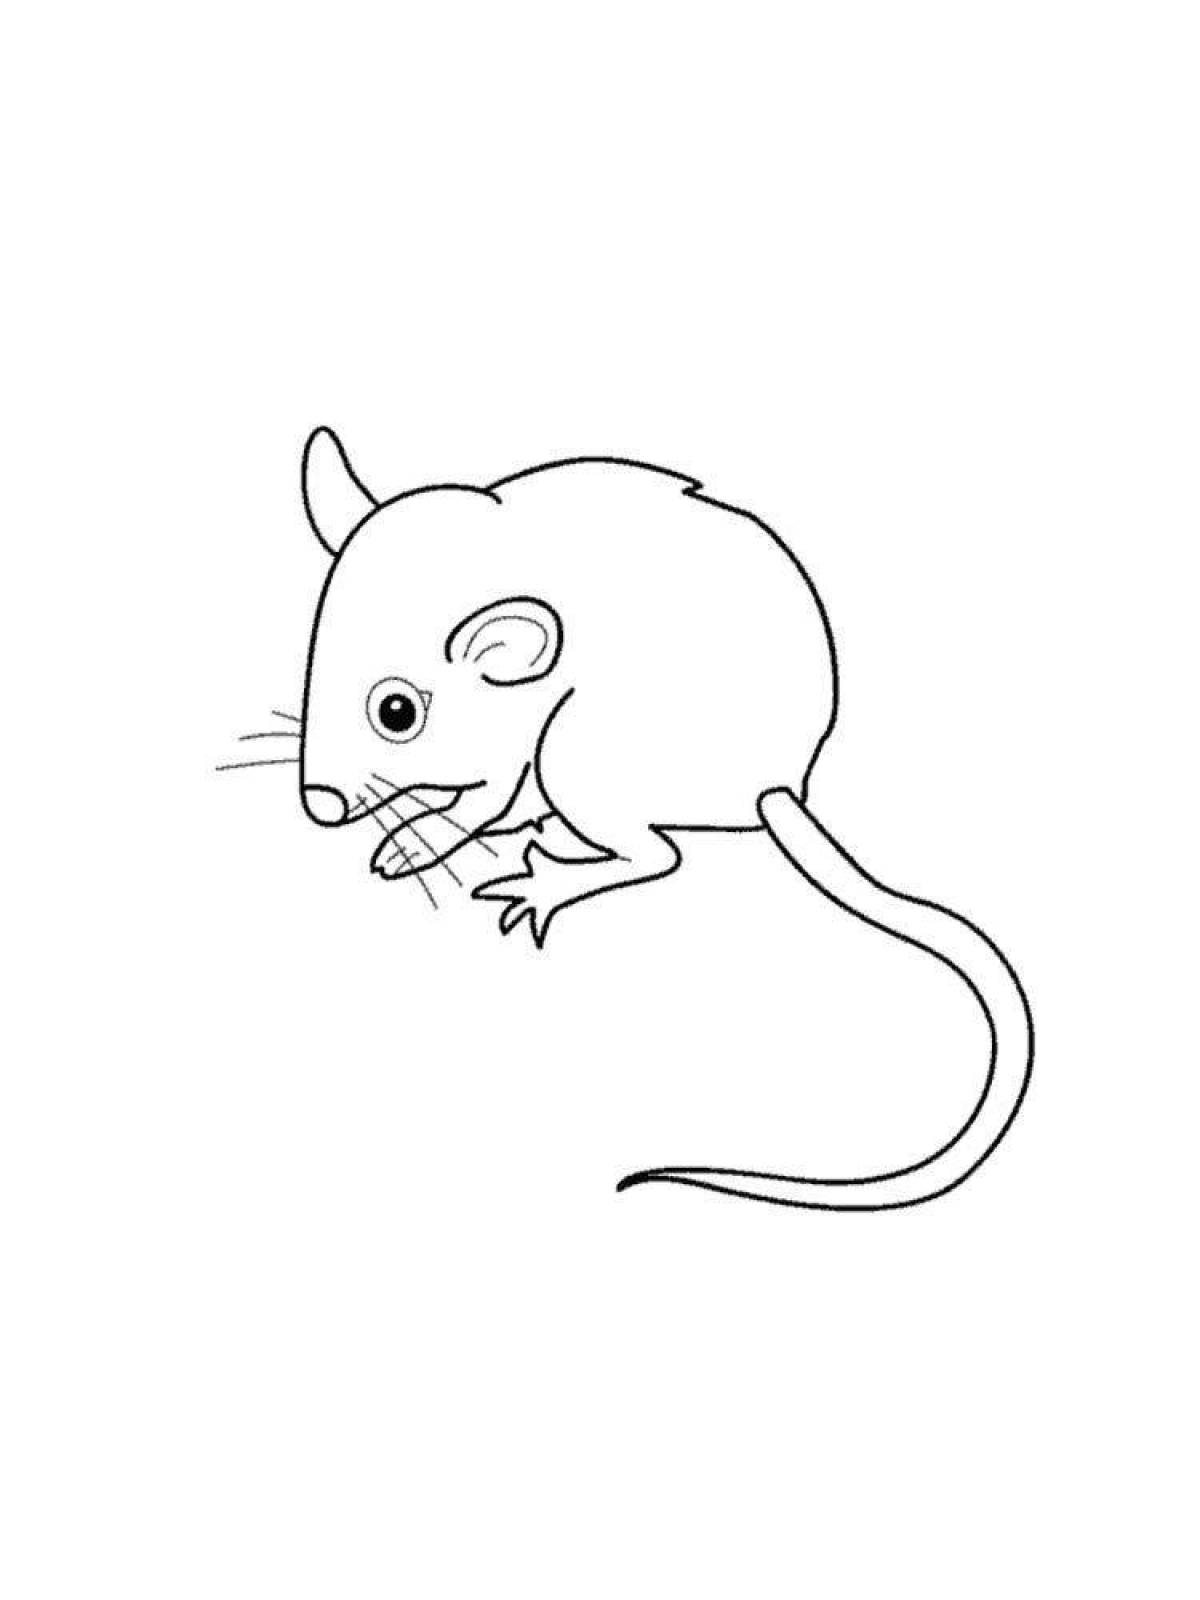 Раскраска мышь распечатать. Мышь раскраска. Раскраска Миша. Раскраска мышонок. Мышь раскраска для детей.